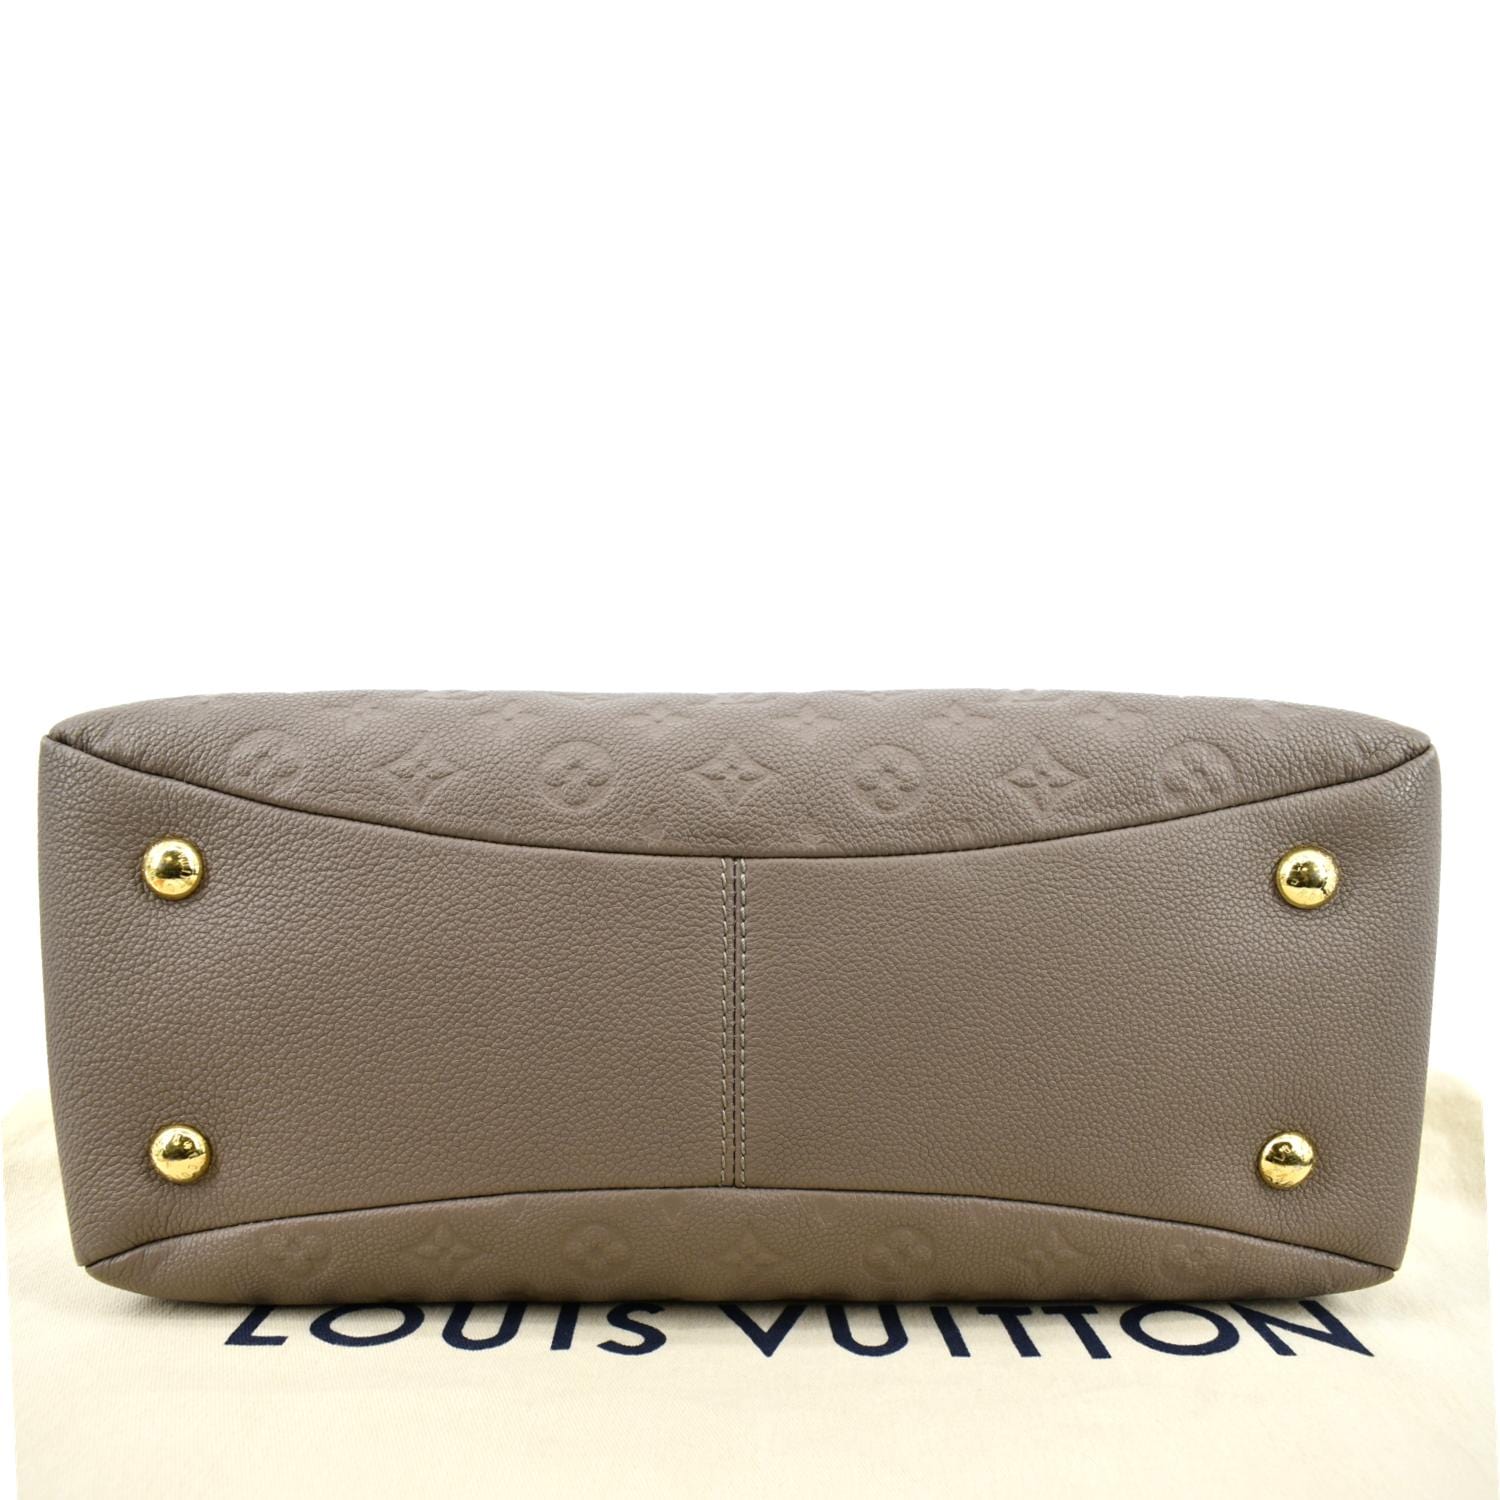 Louis Vuitton Black Empreinte Leather Ponthieu PM Bag – I MISS YOU VINTAGE